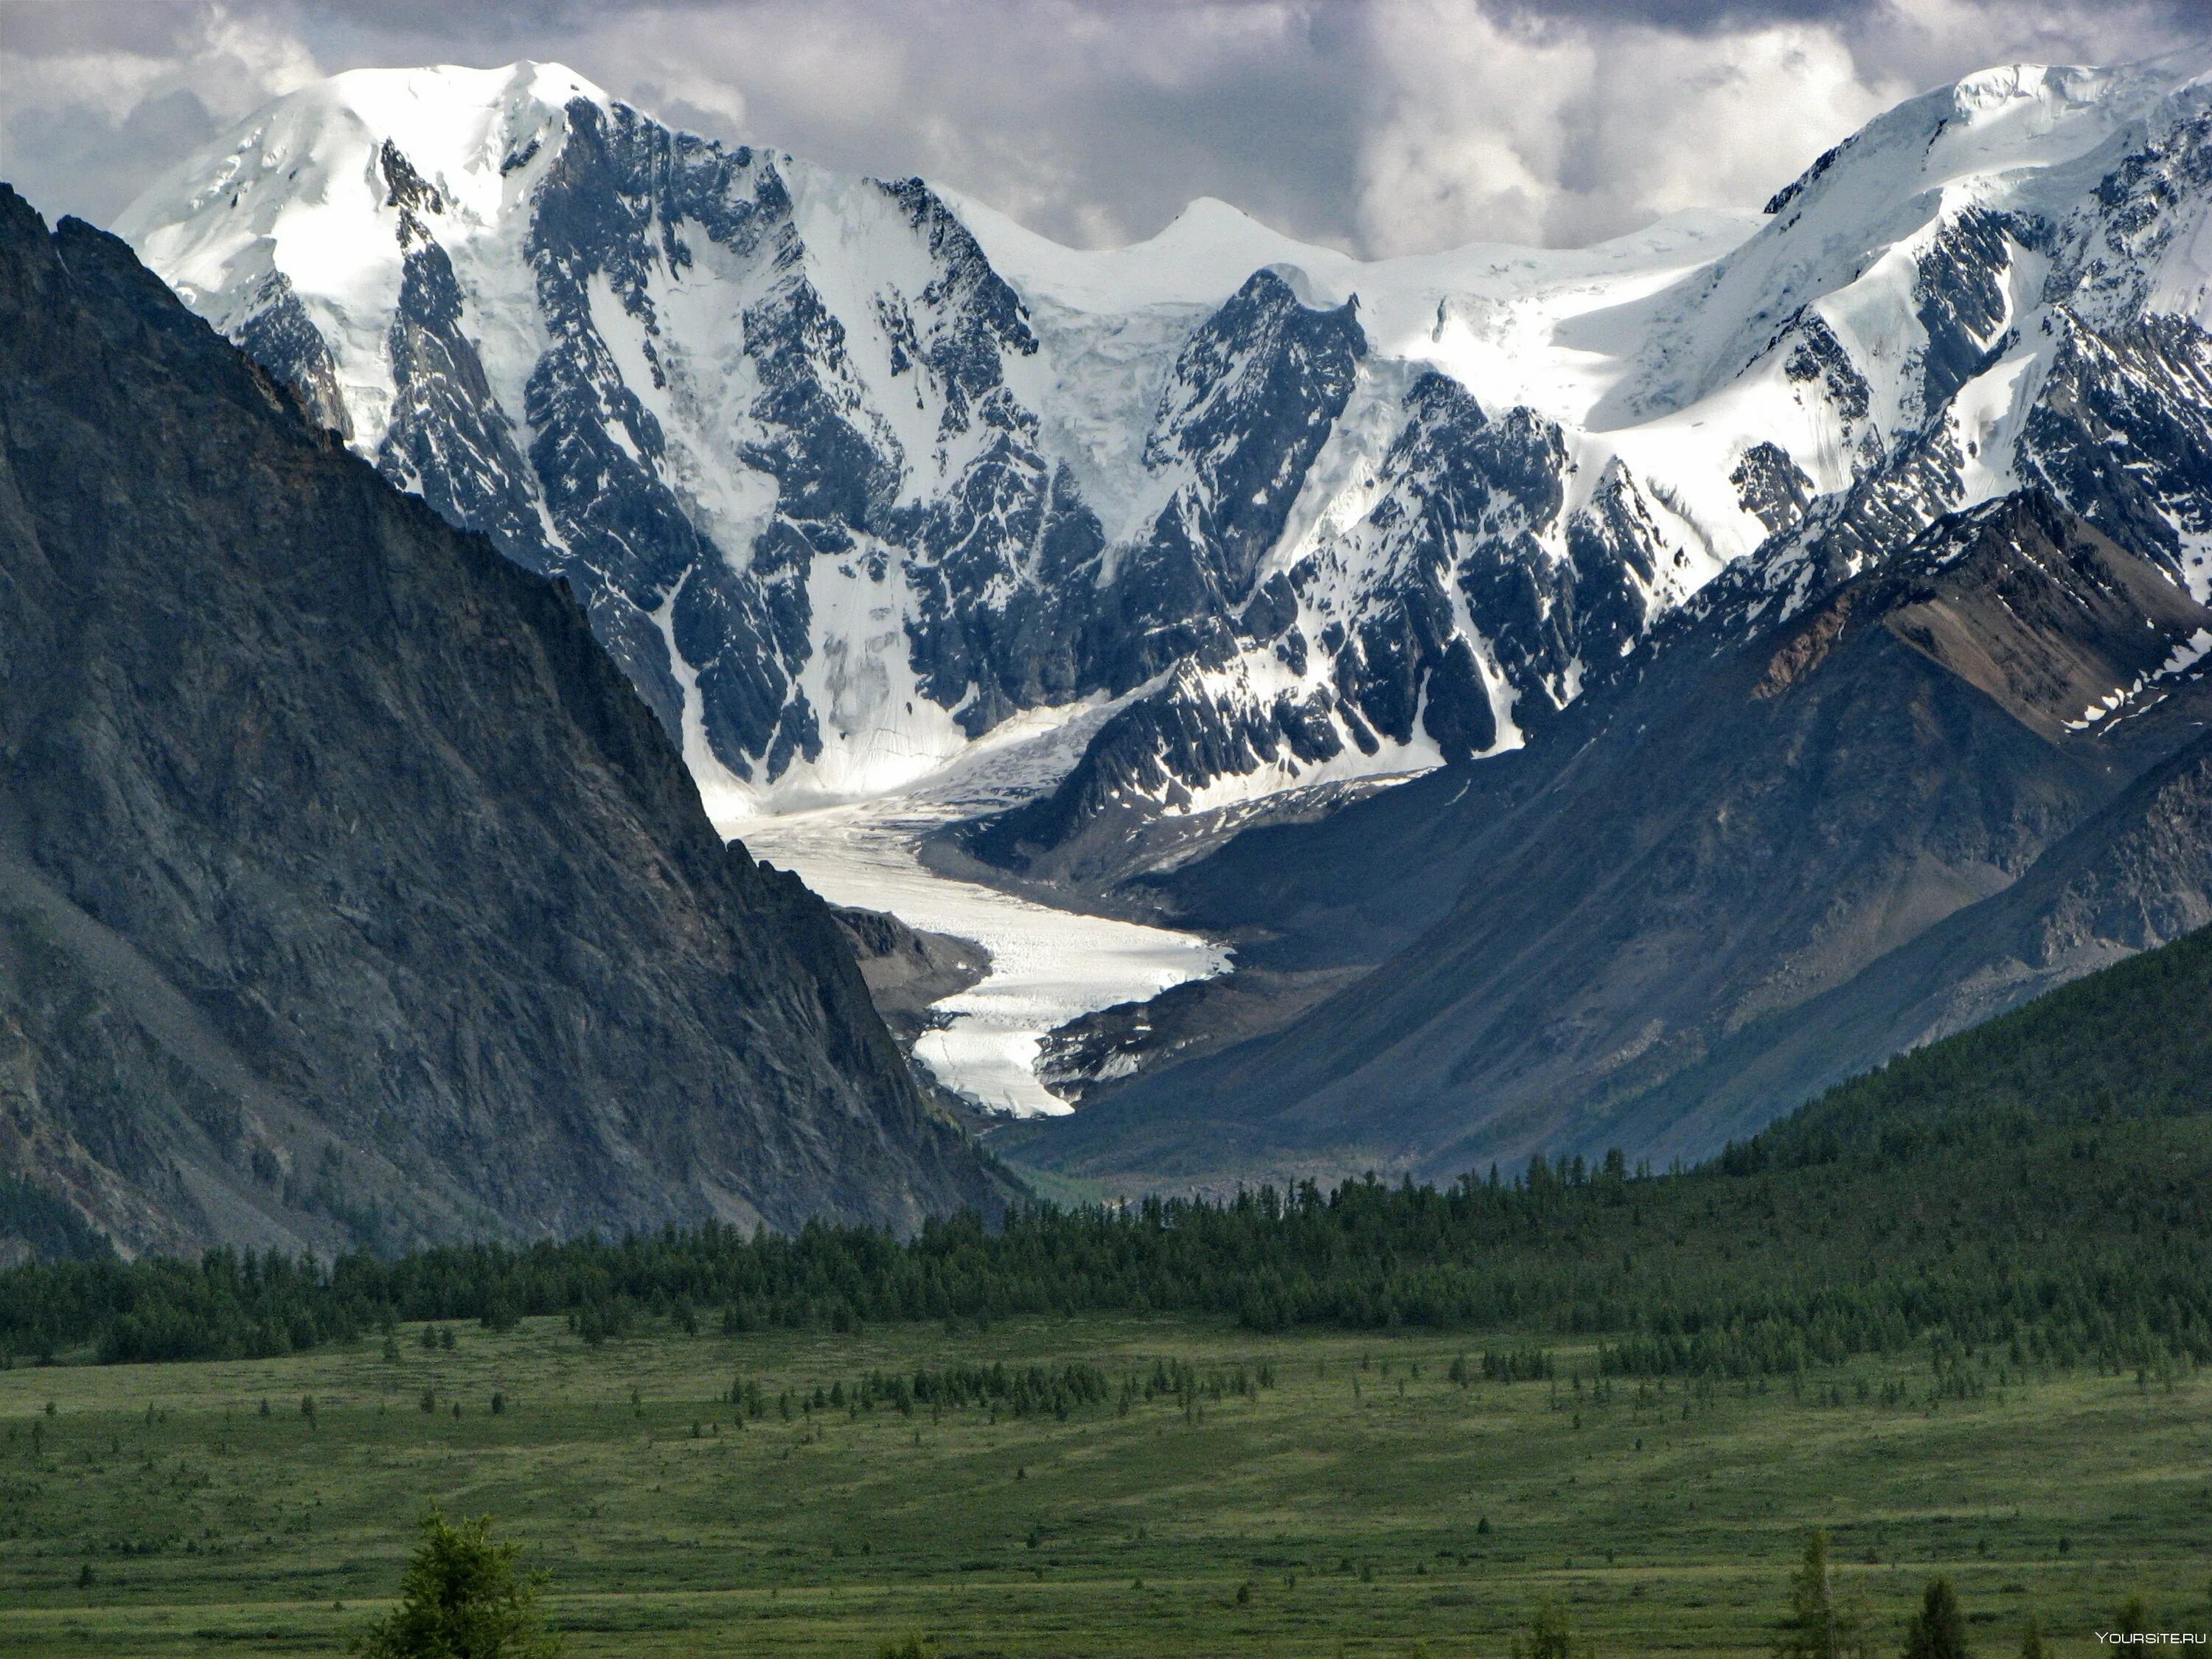 Ледник Актру горный Алтай. Ледник Маашей горный Алтай. Долина Актру Алтай. Ледники Северо-Чуйского хребта. Направление горных хребтов горы алтай